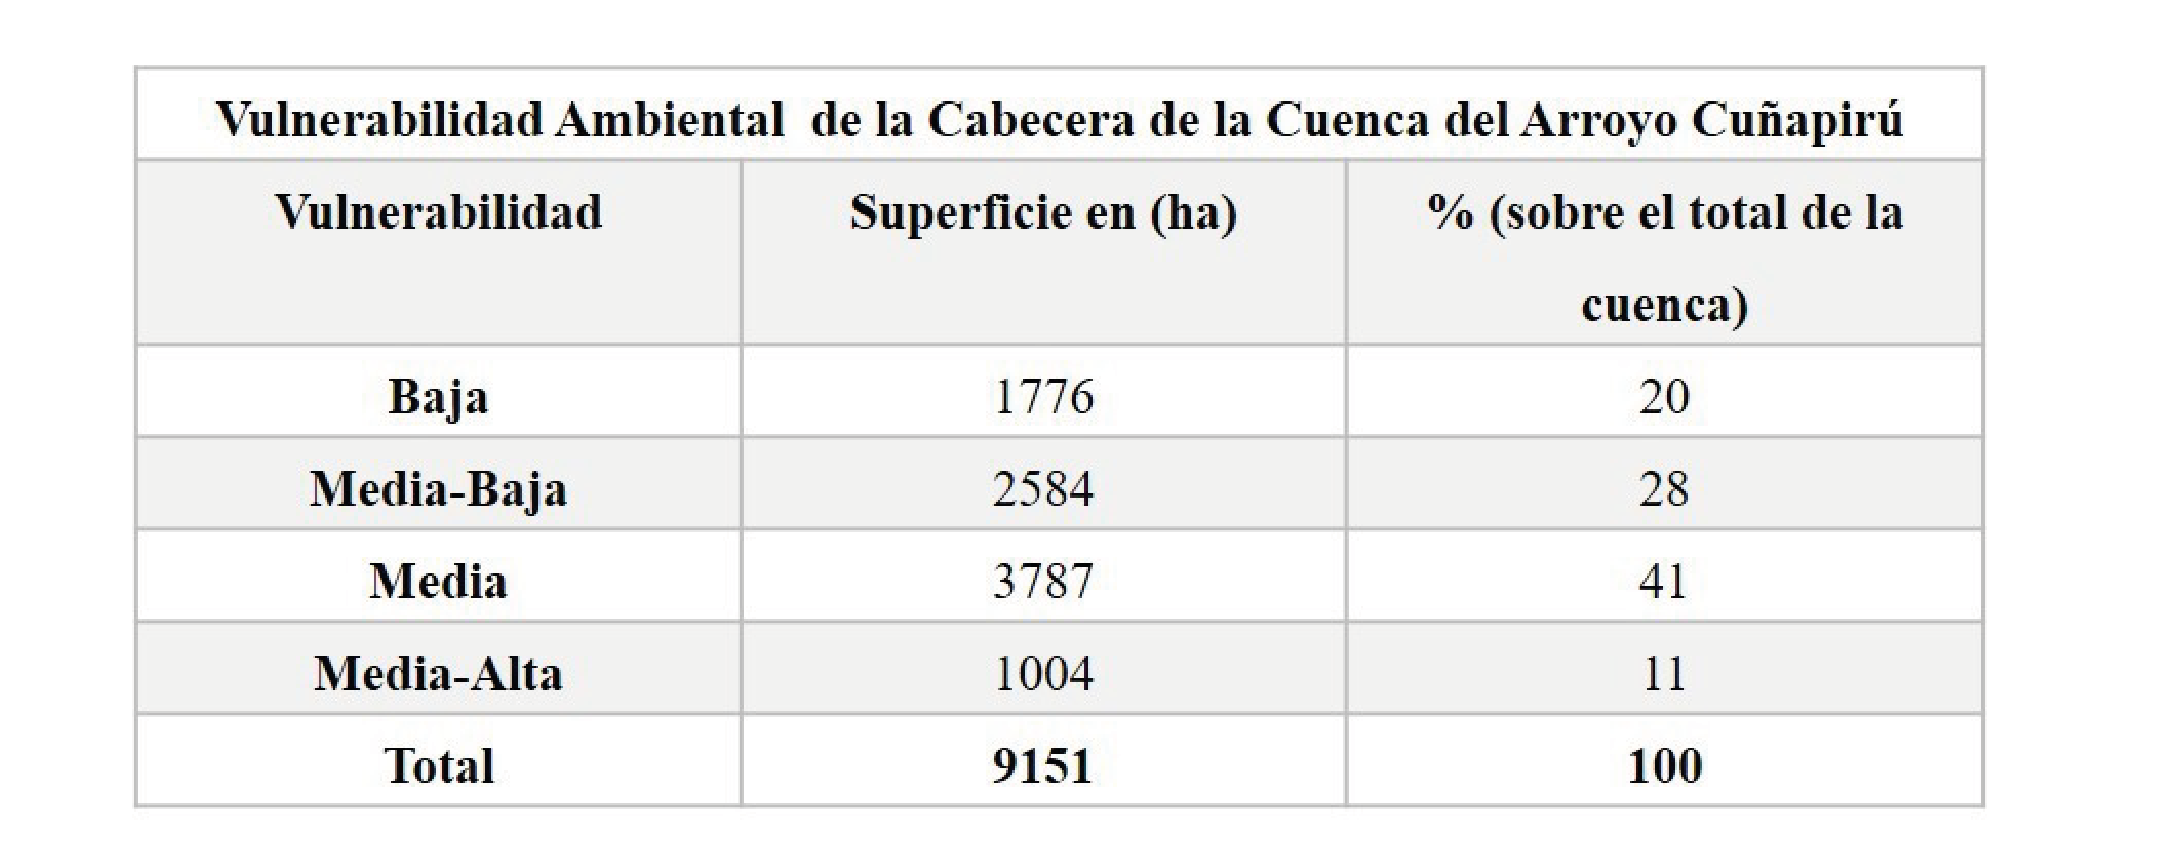 Vulnerabilidad Ambiental en superficie en (ha) y % de ocupación de la
Cabecera de la Cuenca del Arroyo Cuñapirú.